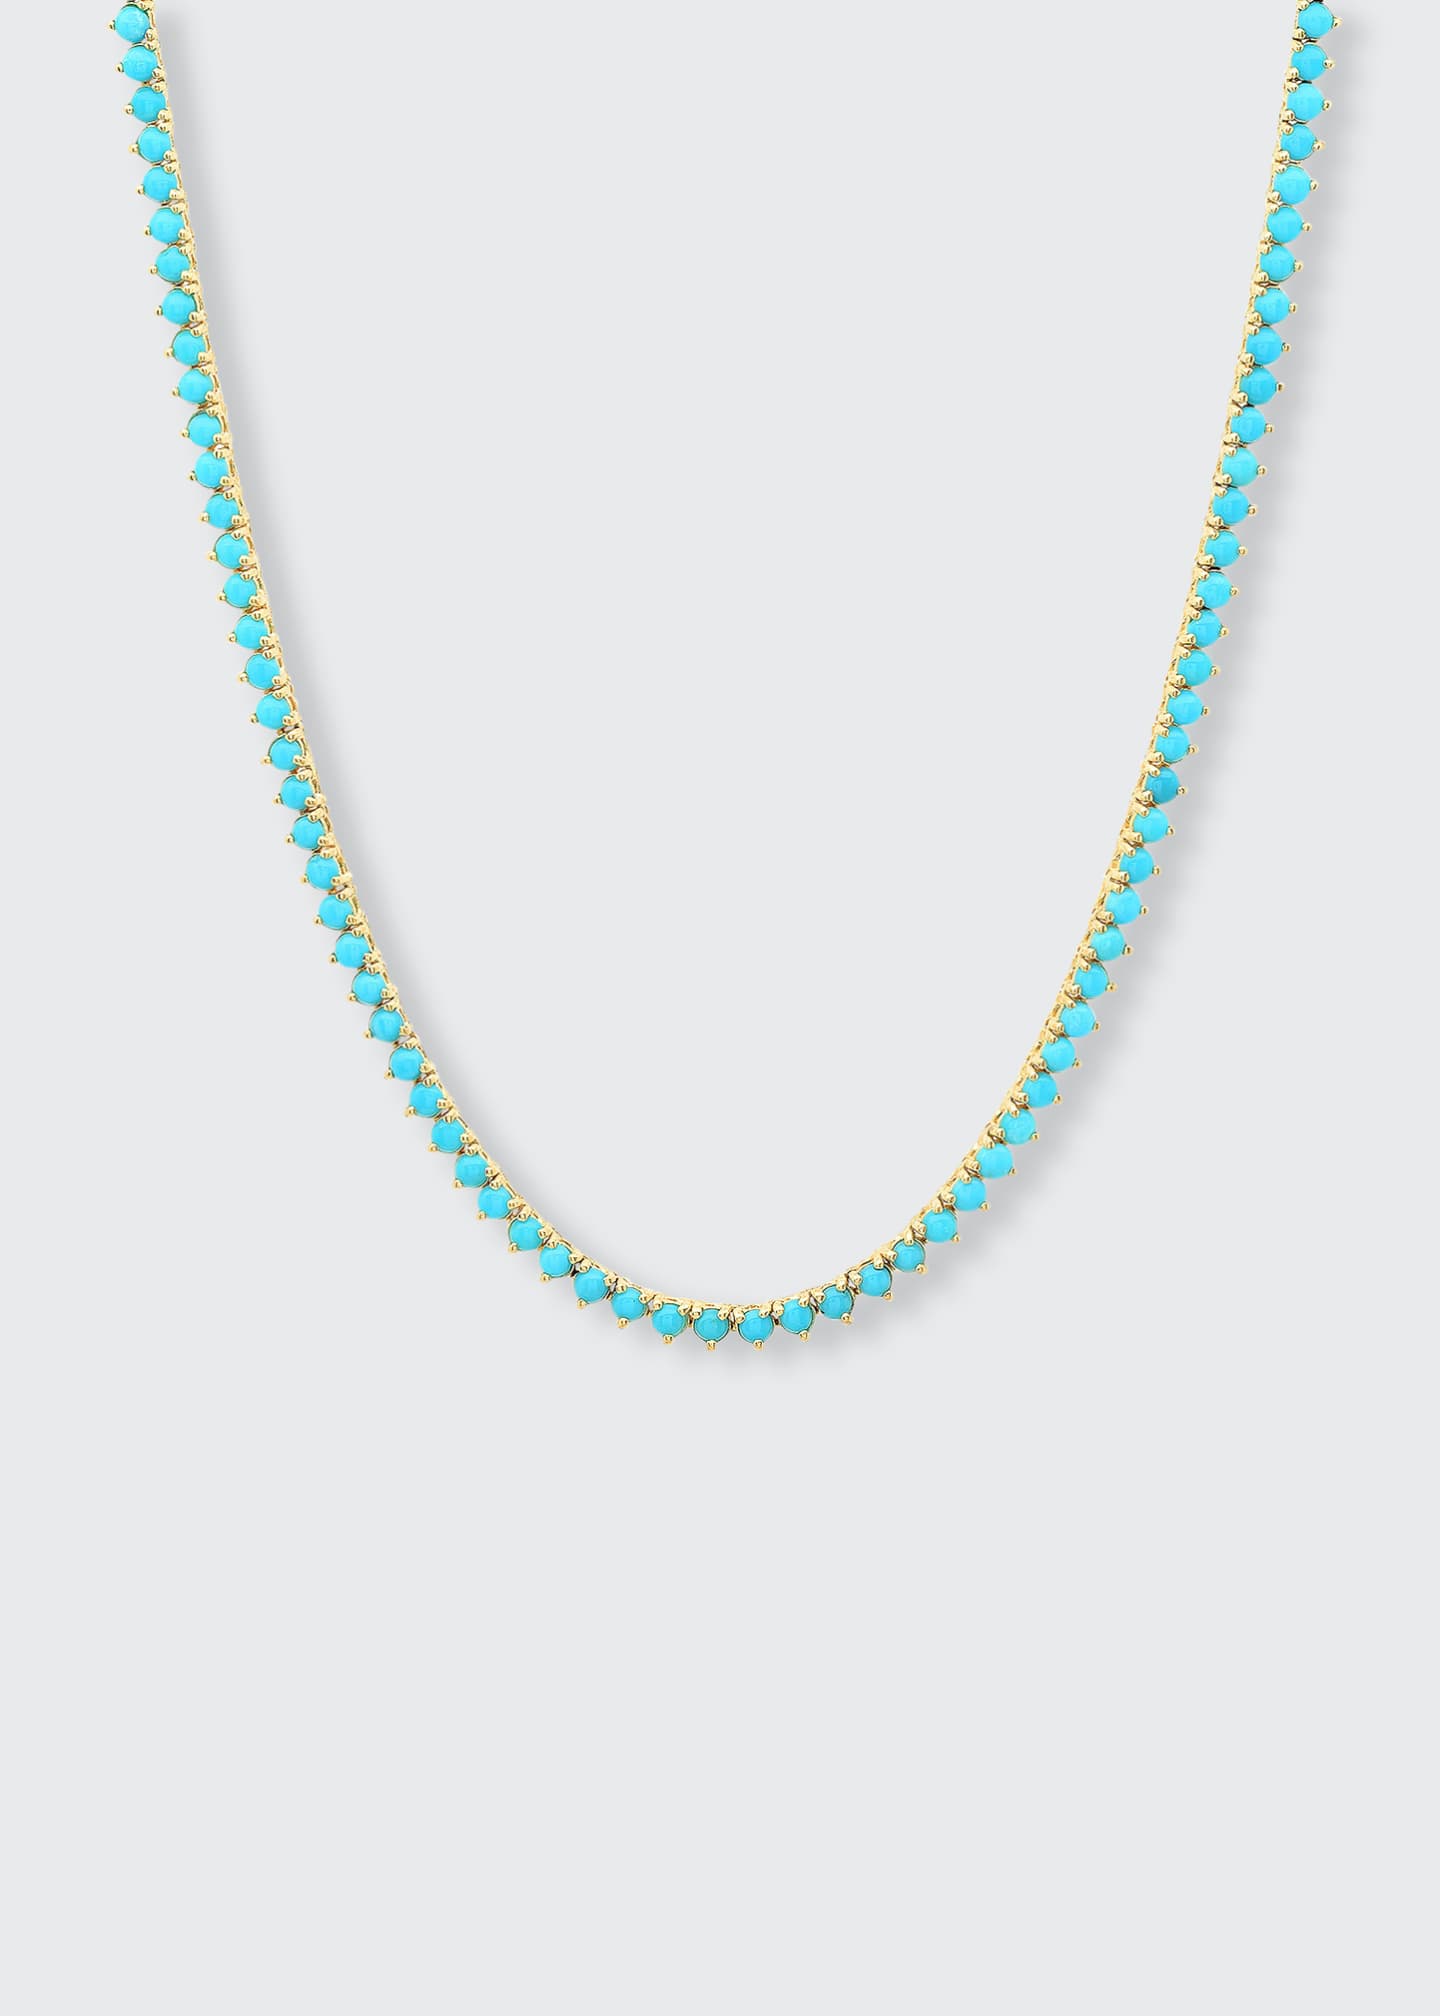 Jennifer Meyer 18k Turquoise 3-Prong Tennis Necklace Image 2 of 2